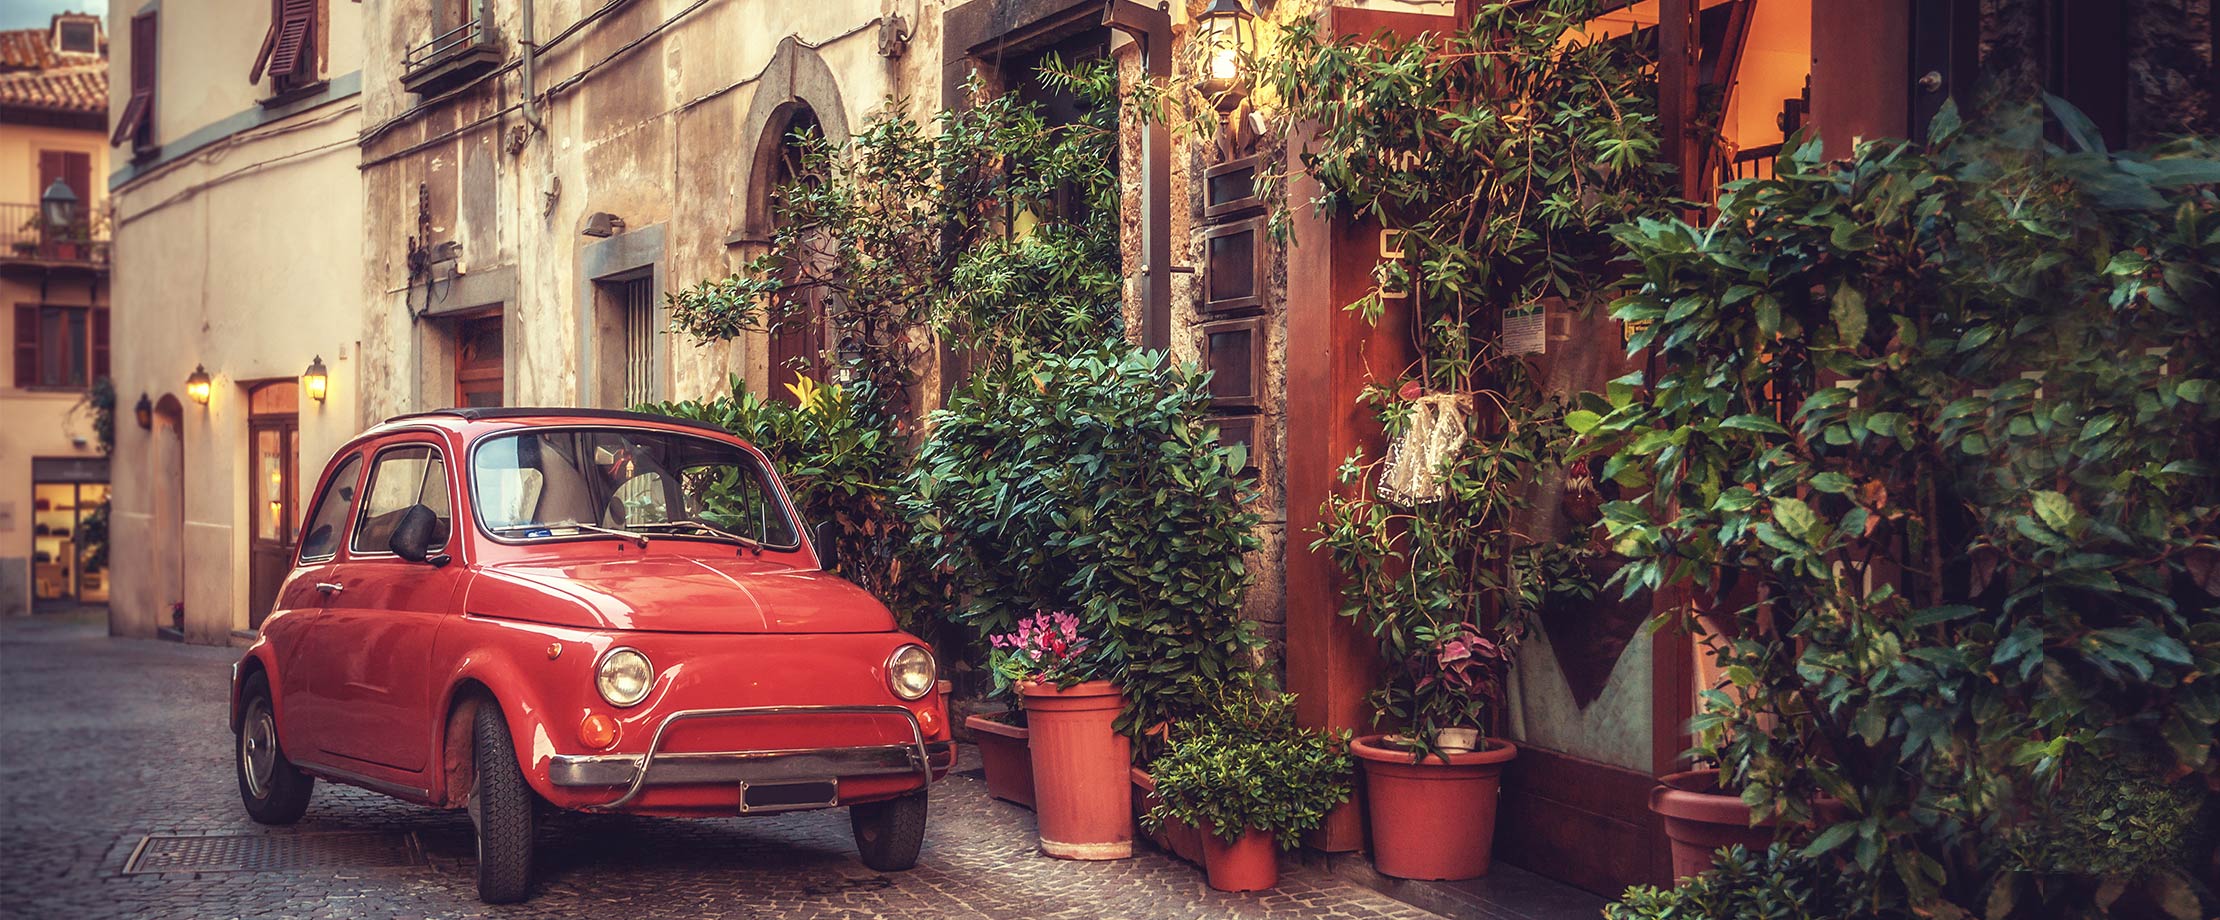 Ein rotes Auto steht vor einem Haus in einer schmalen Seitengasse Italiens. Vor dem Haus stehen viele Pflanzen, Efeu rankt sich die Hausmauer hinauf.